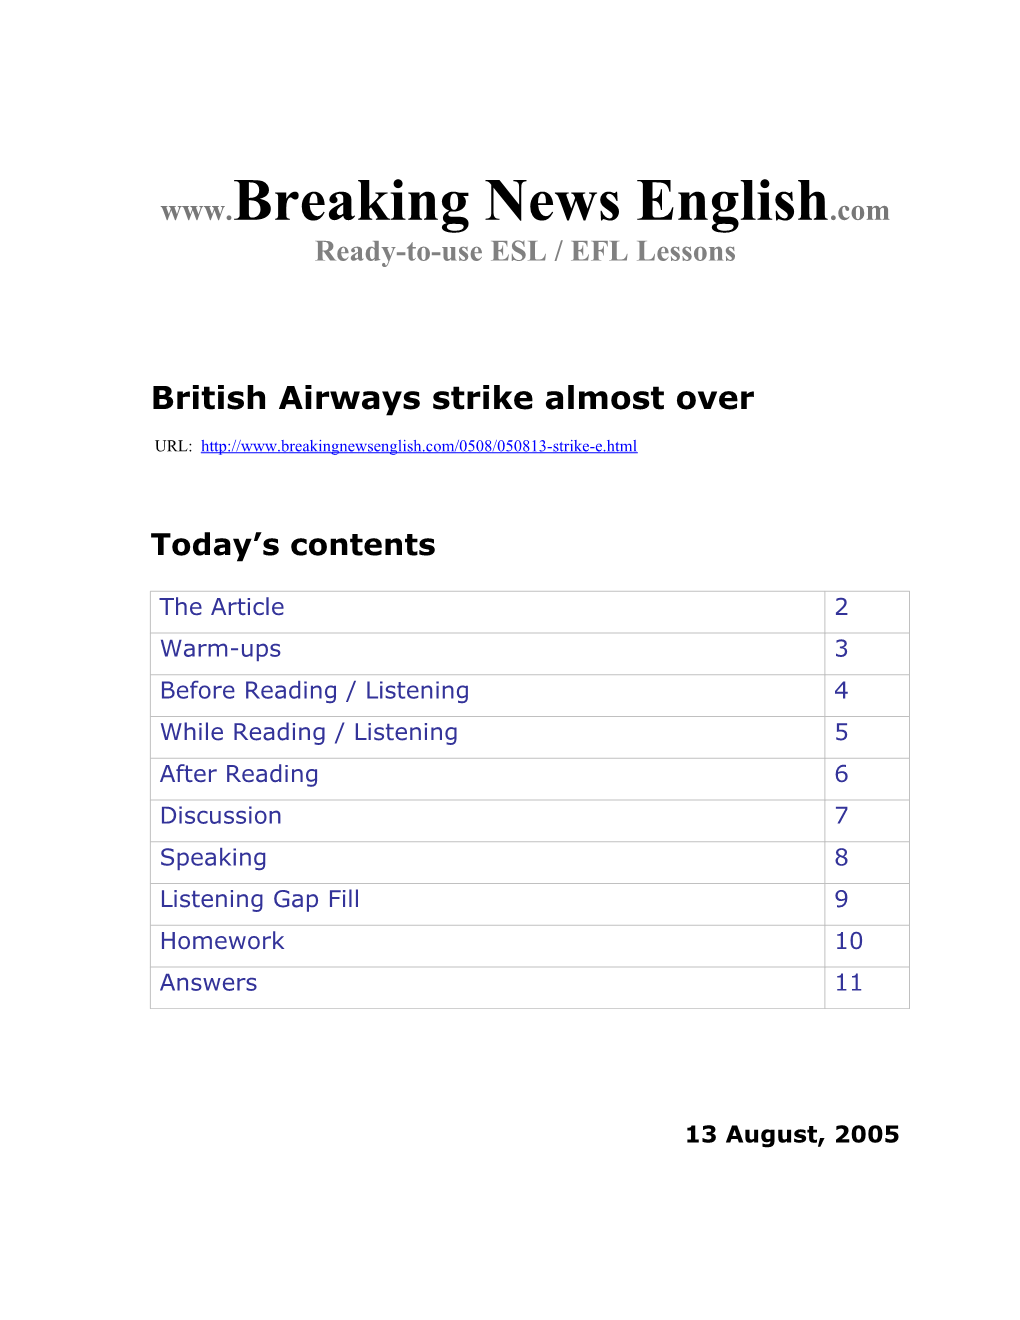 British Airways Strike Almost Over